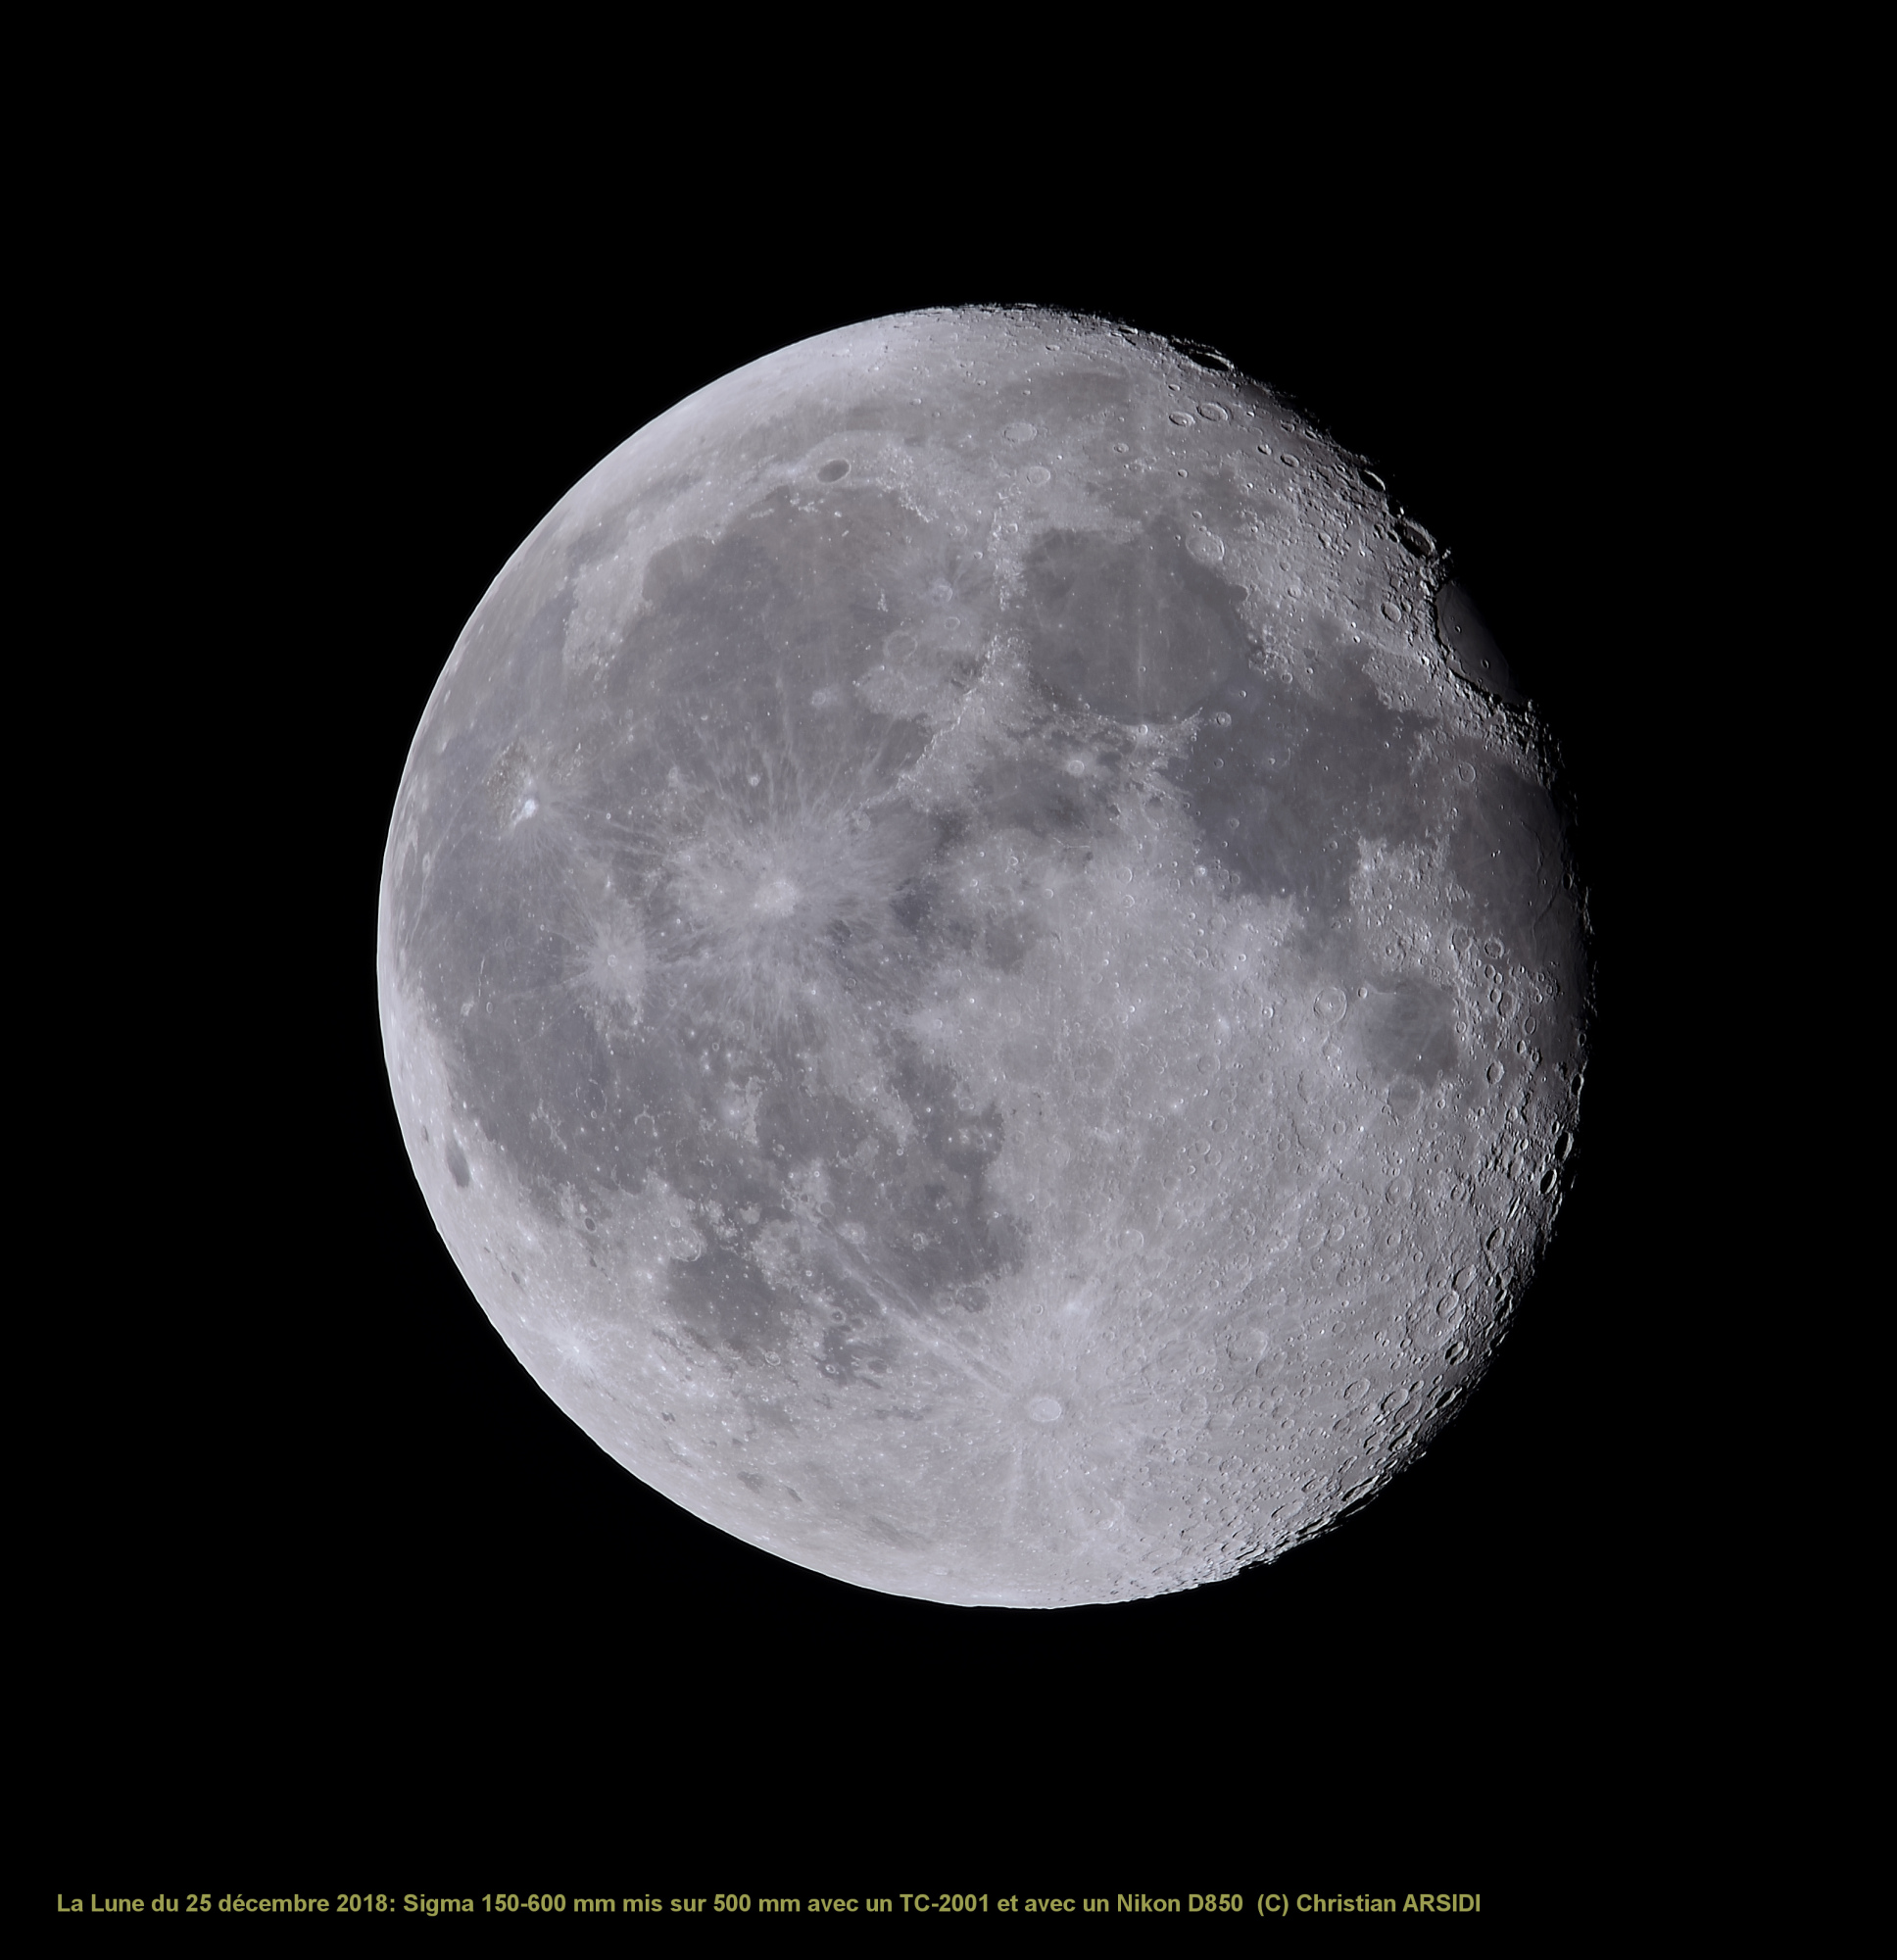 La Lune 30 Images recadrée_DxO-1 1 JPEG.jpg